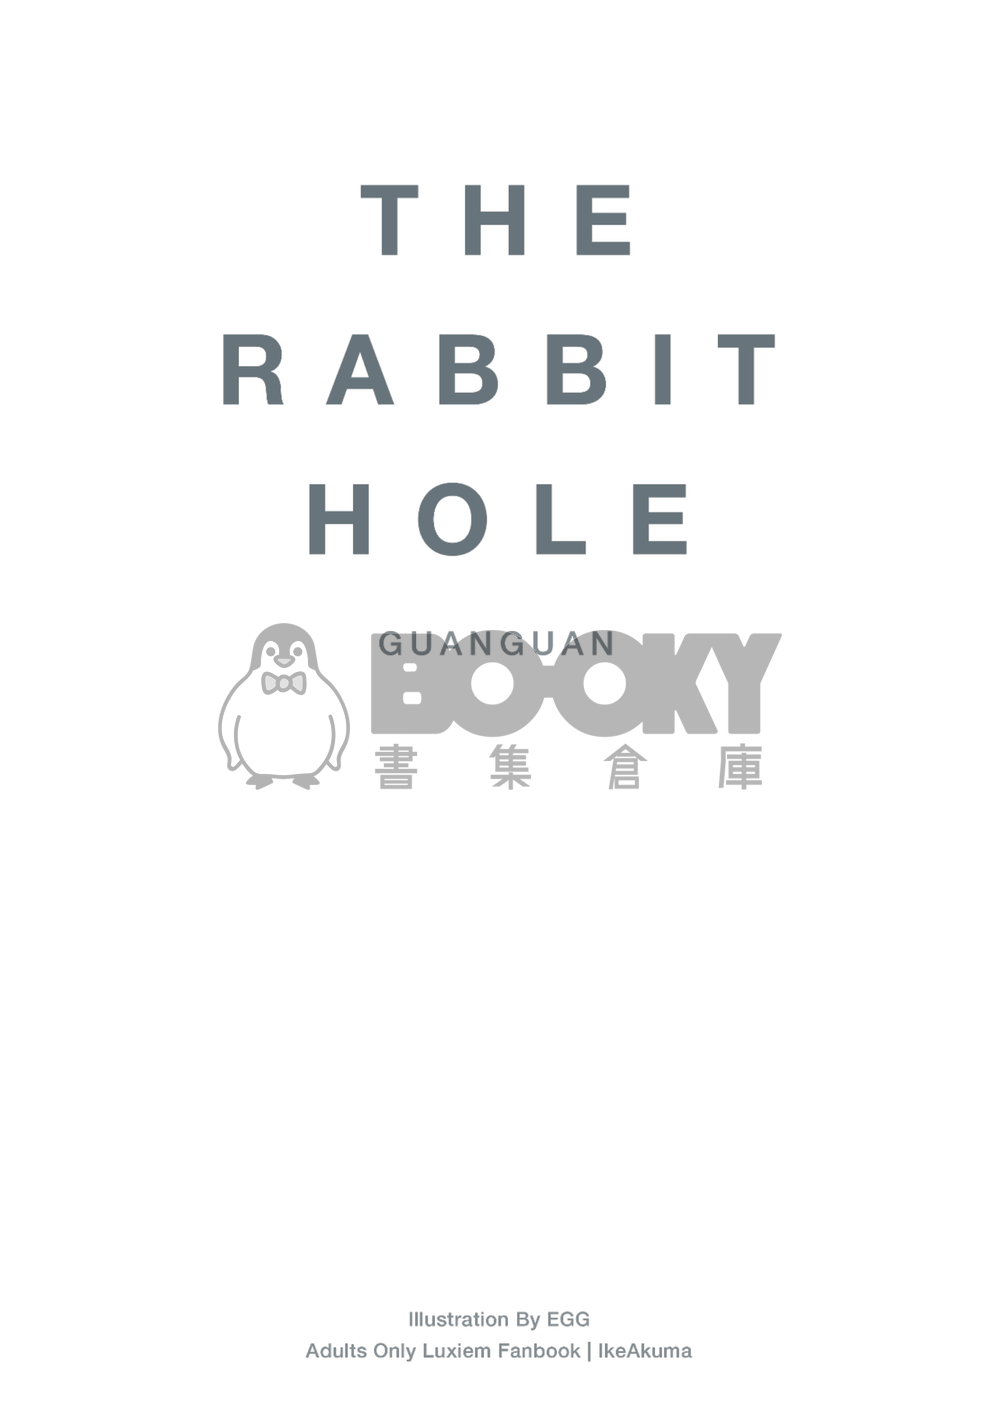 The Rabbit Hole 試閱圖片